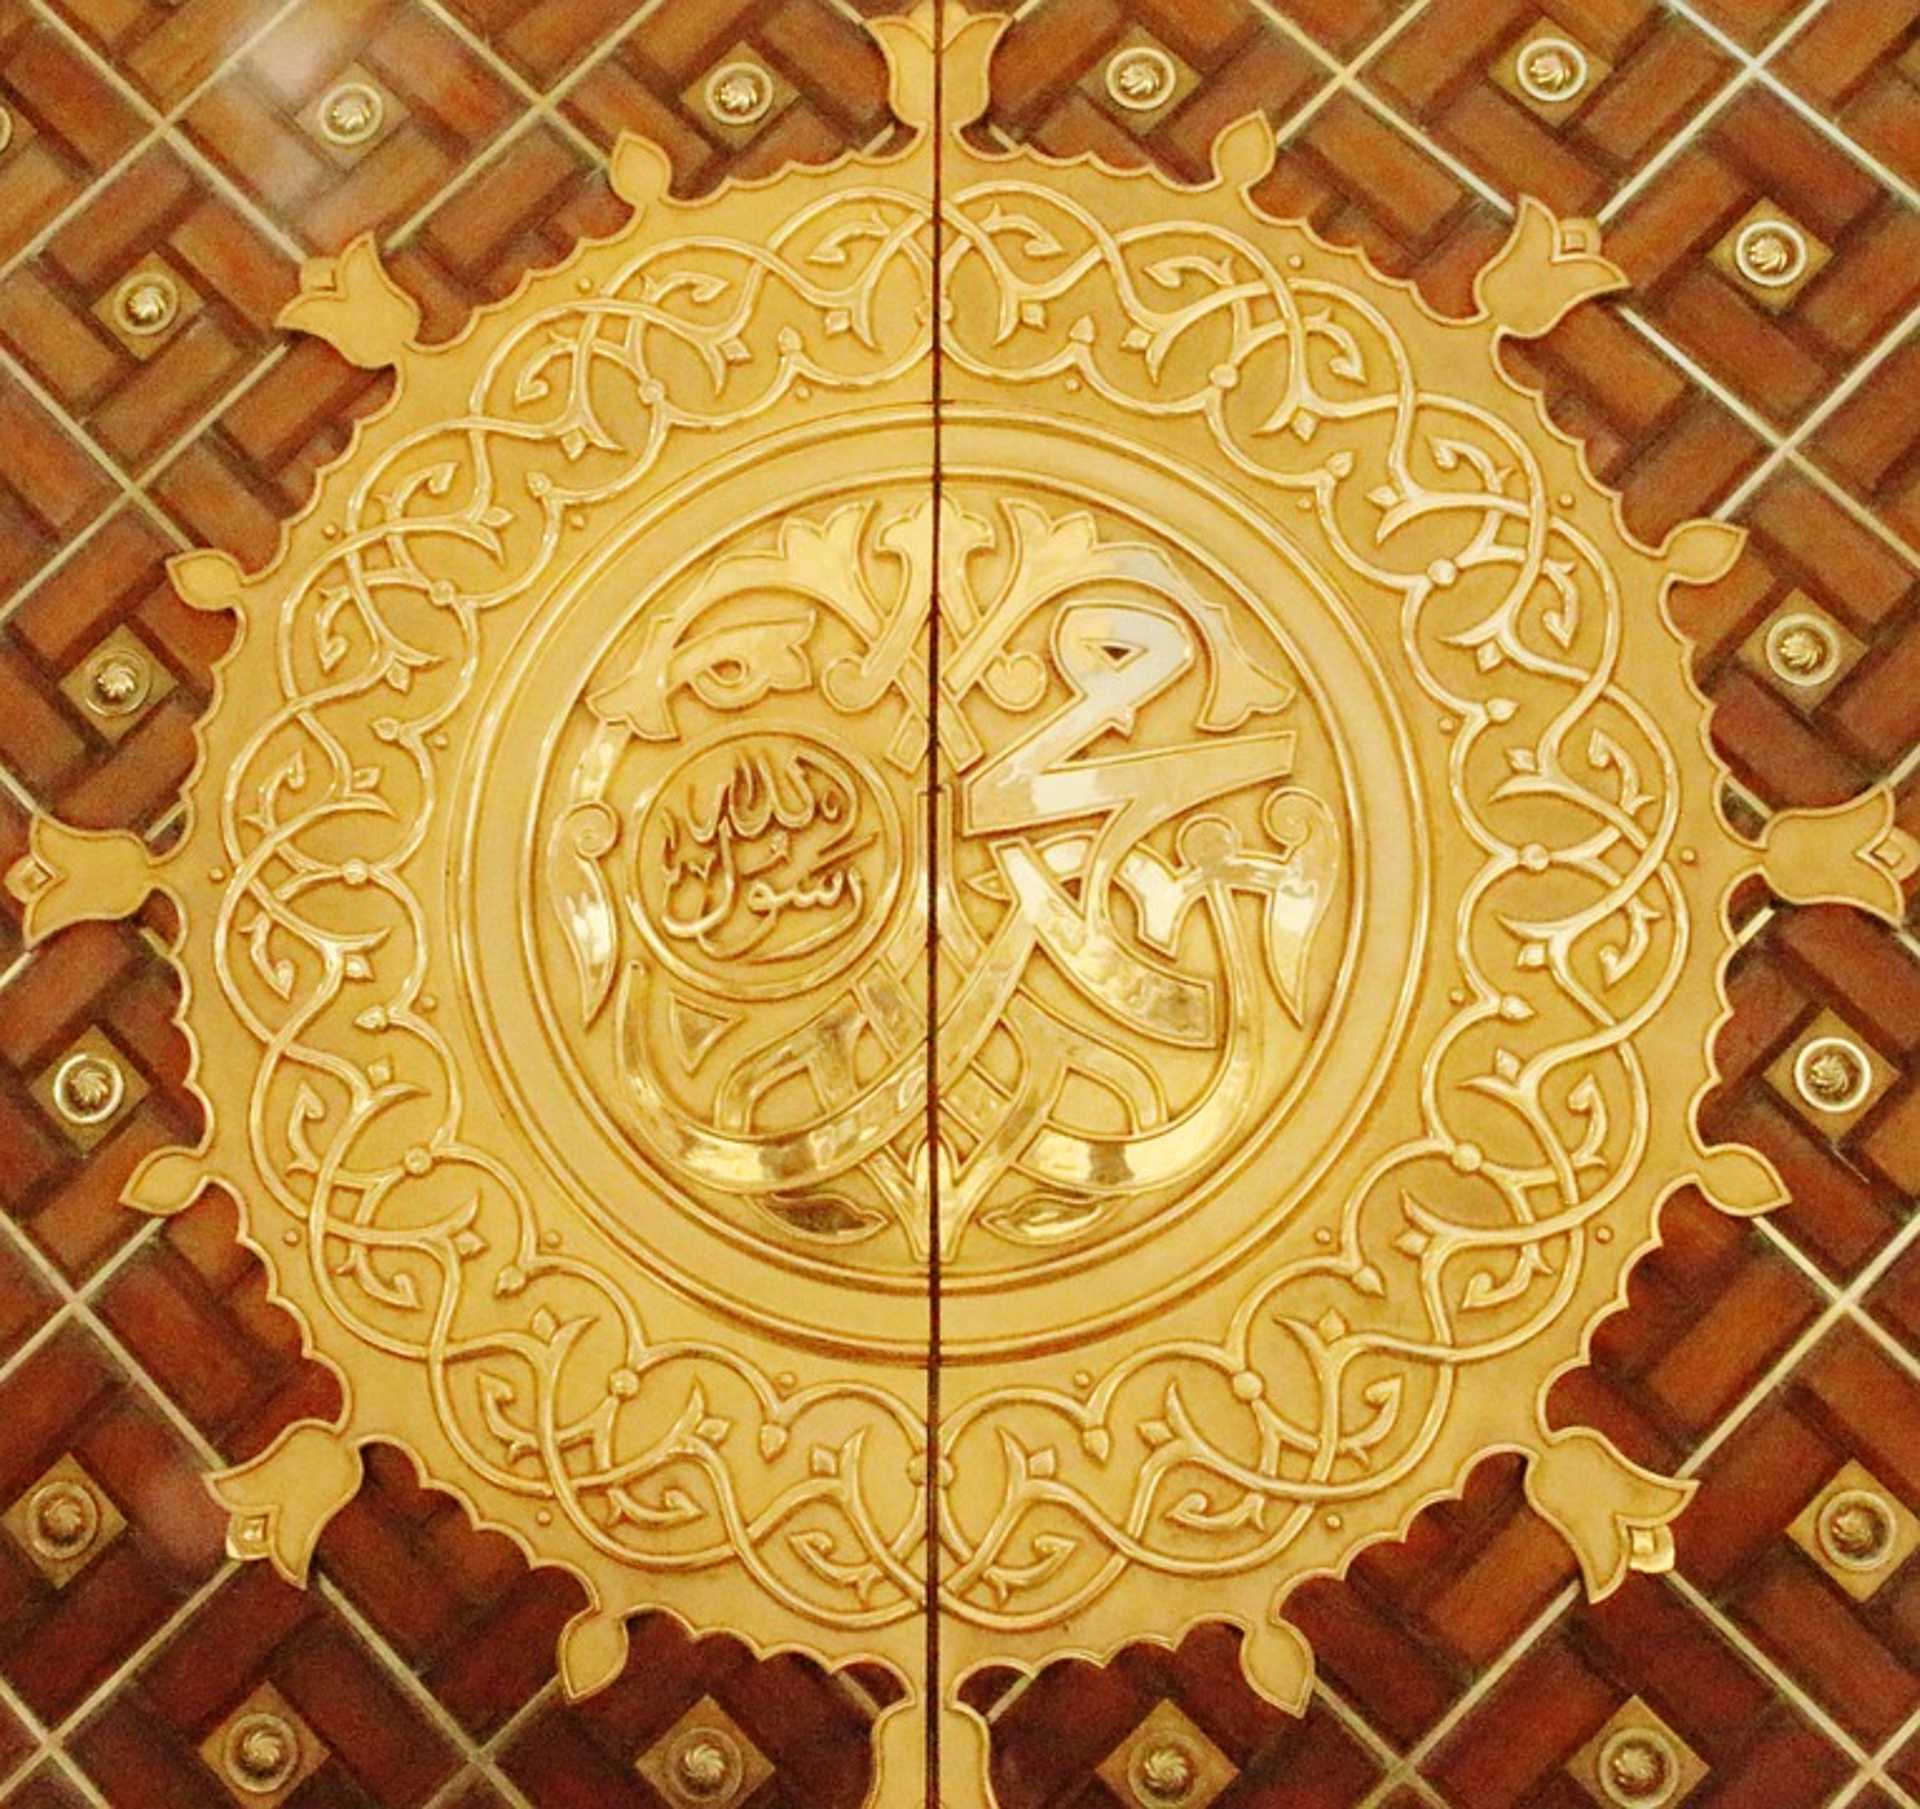 Muhammad, Prophet, Madinah, City, Mohammed, Islamic